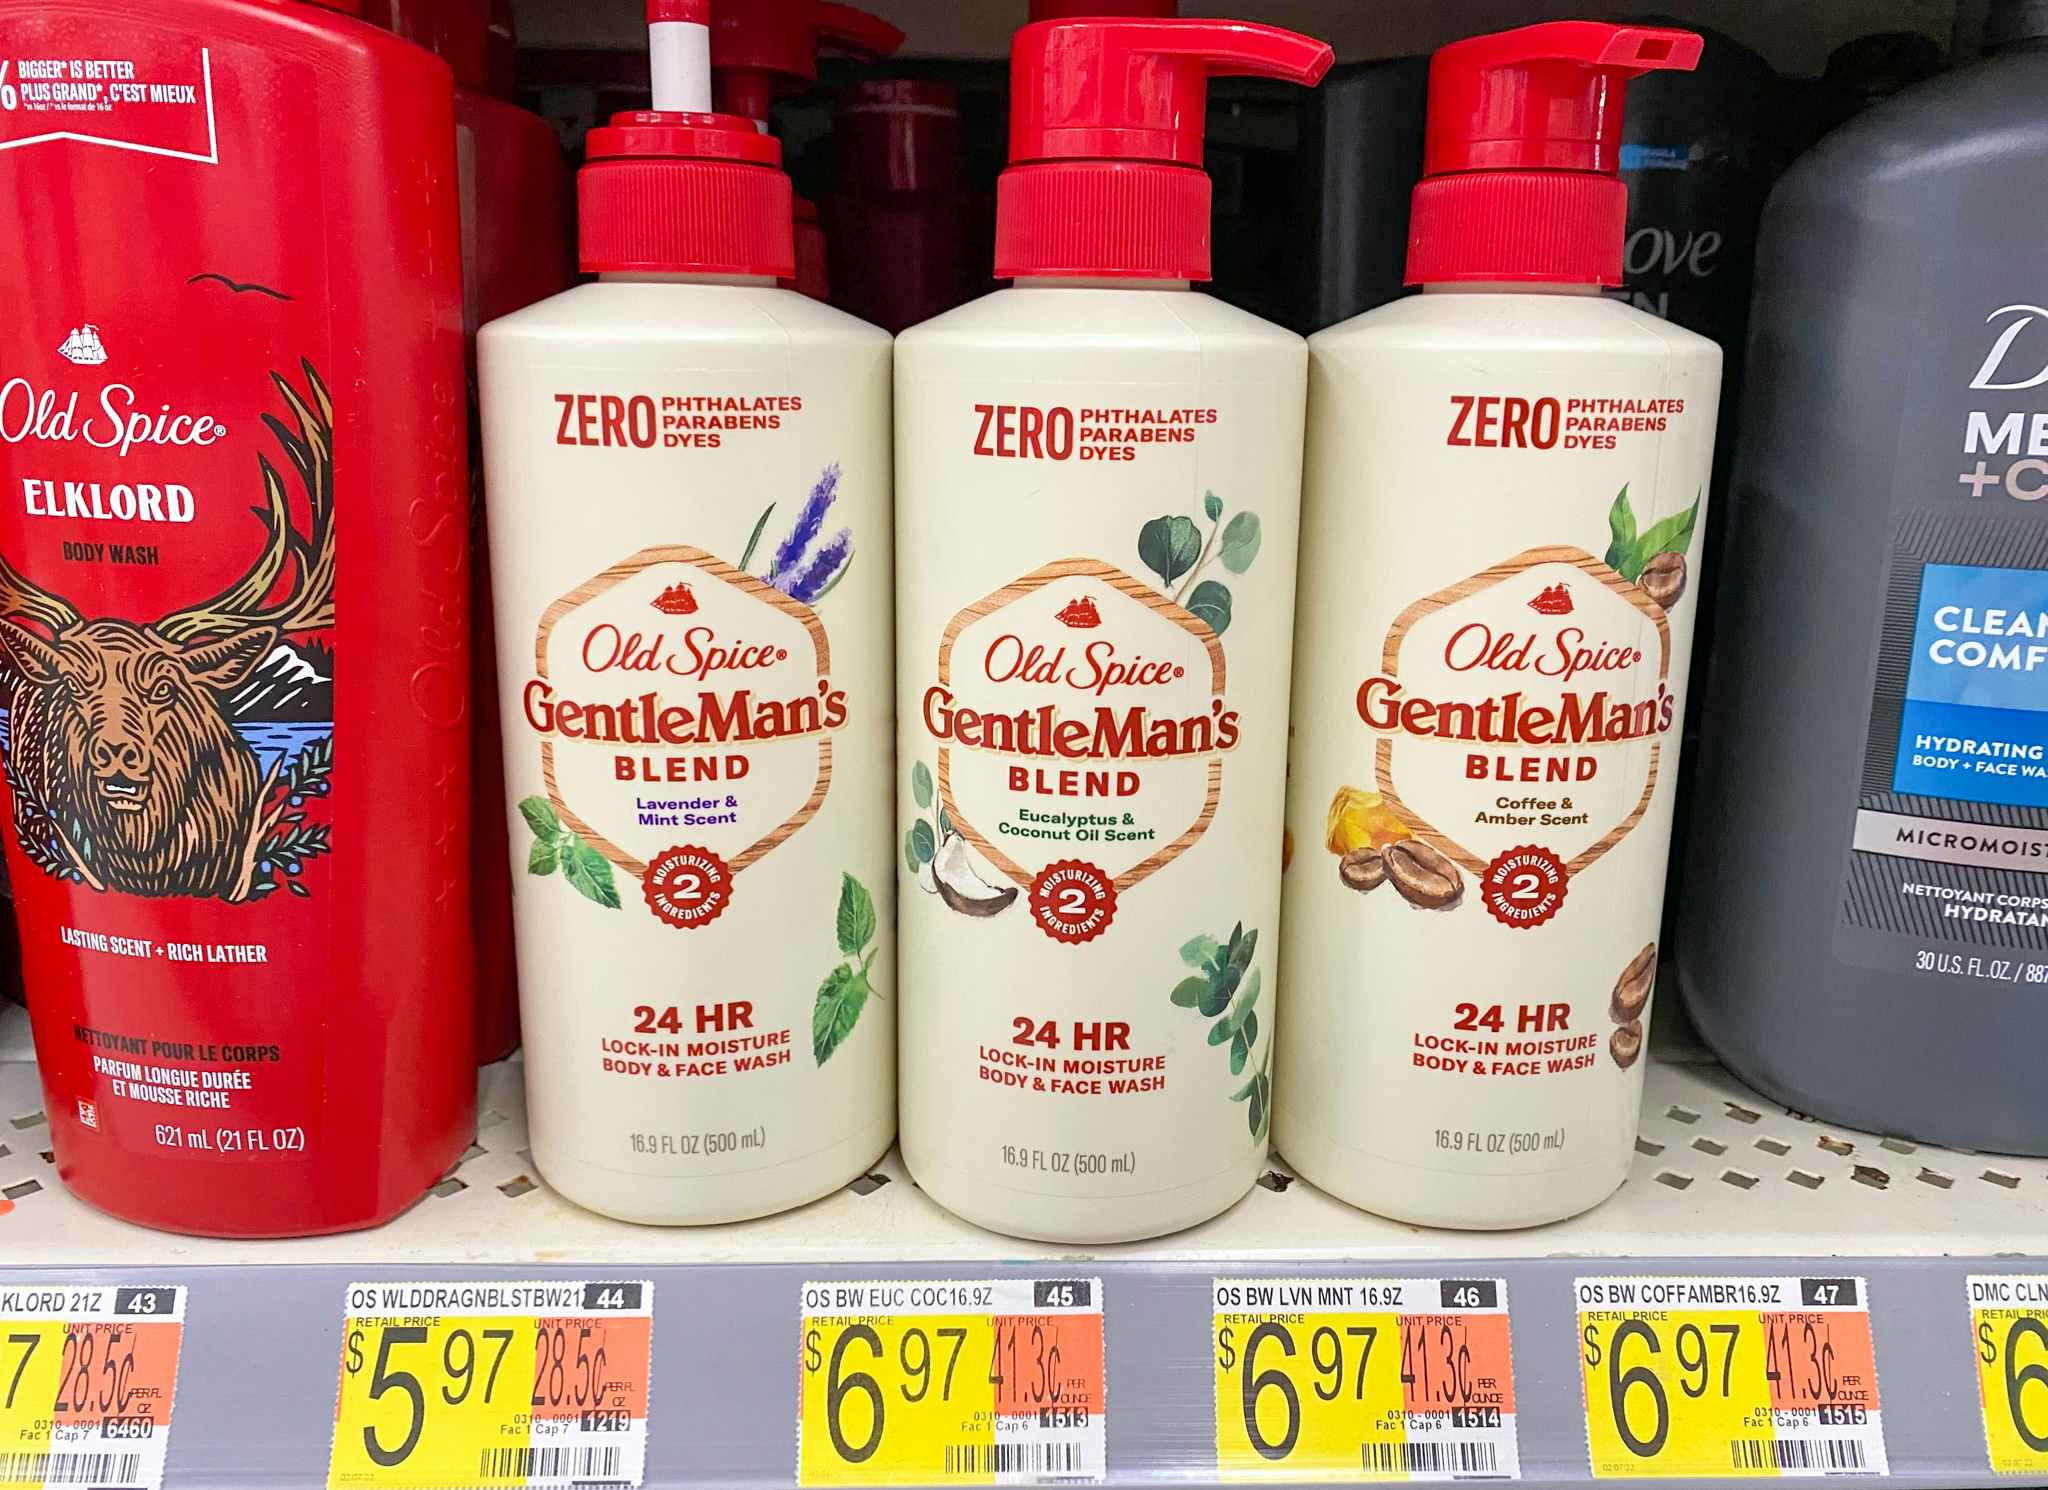 Old Spice Gentleman's Blend Body Wash at Walmart